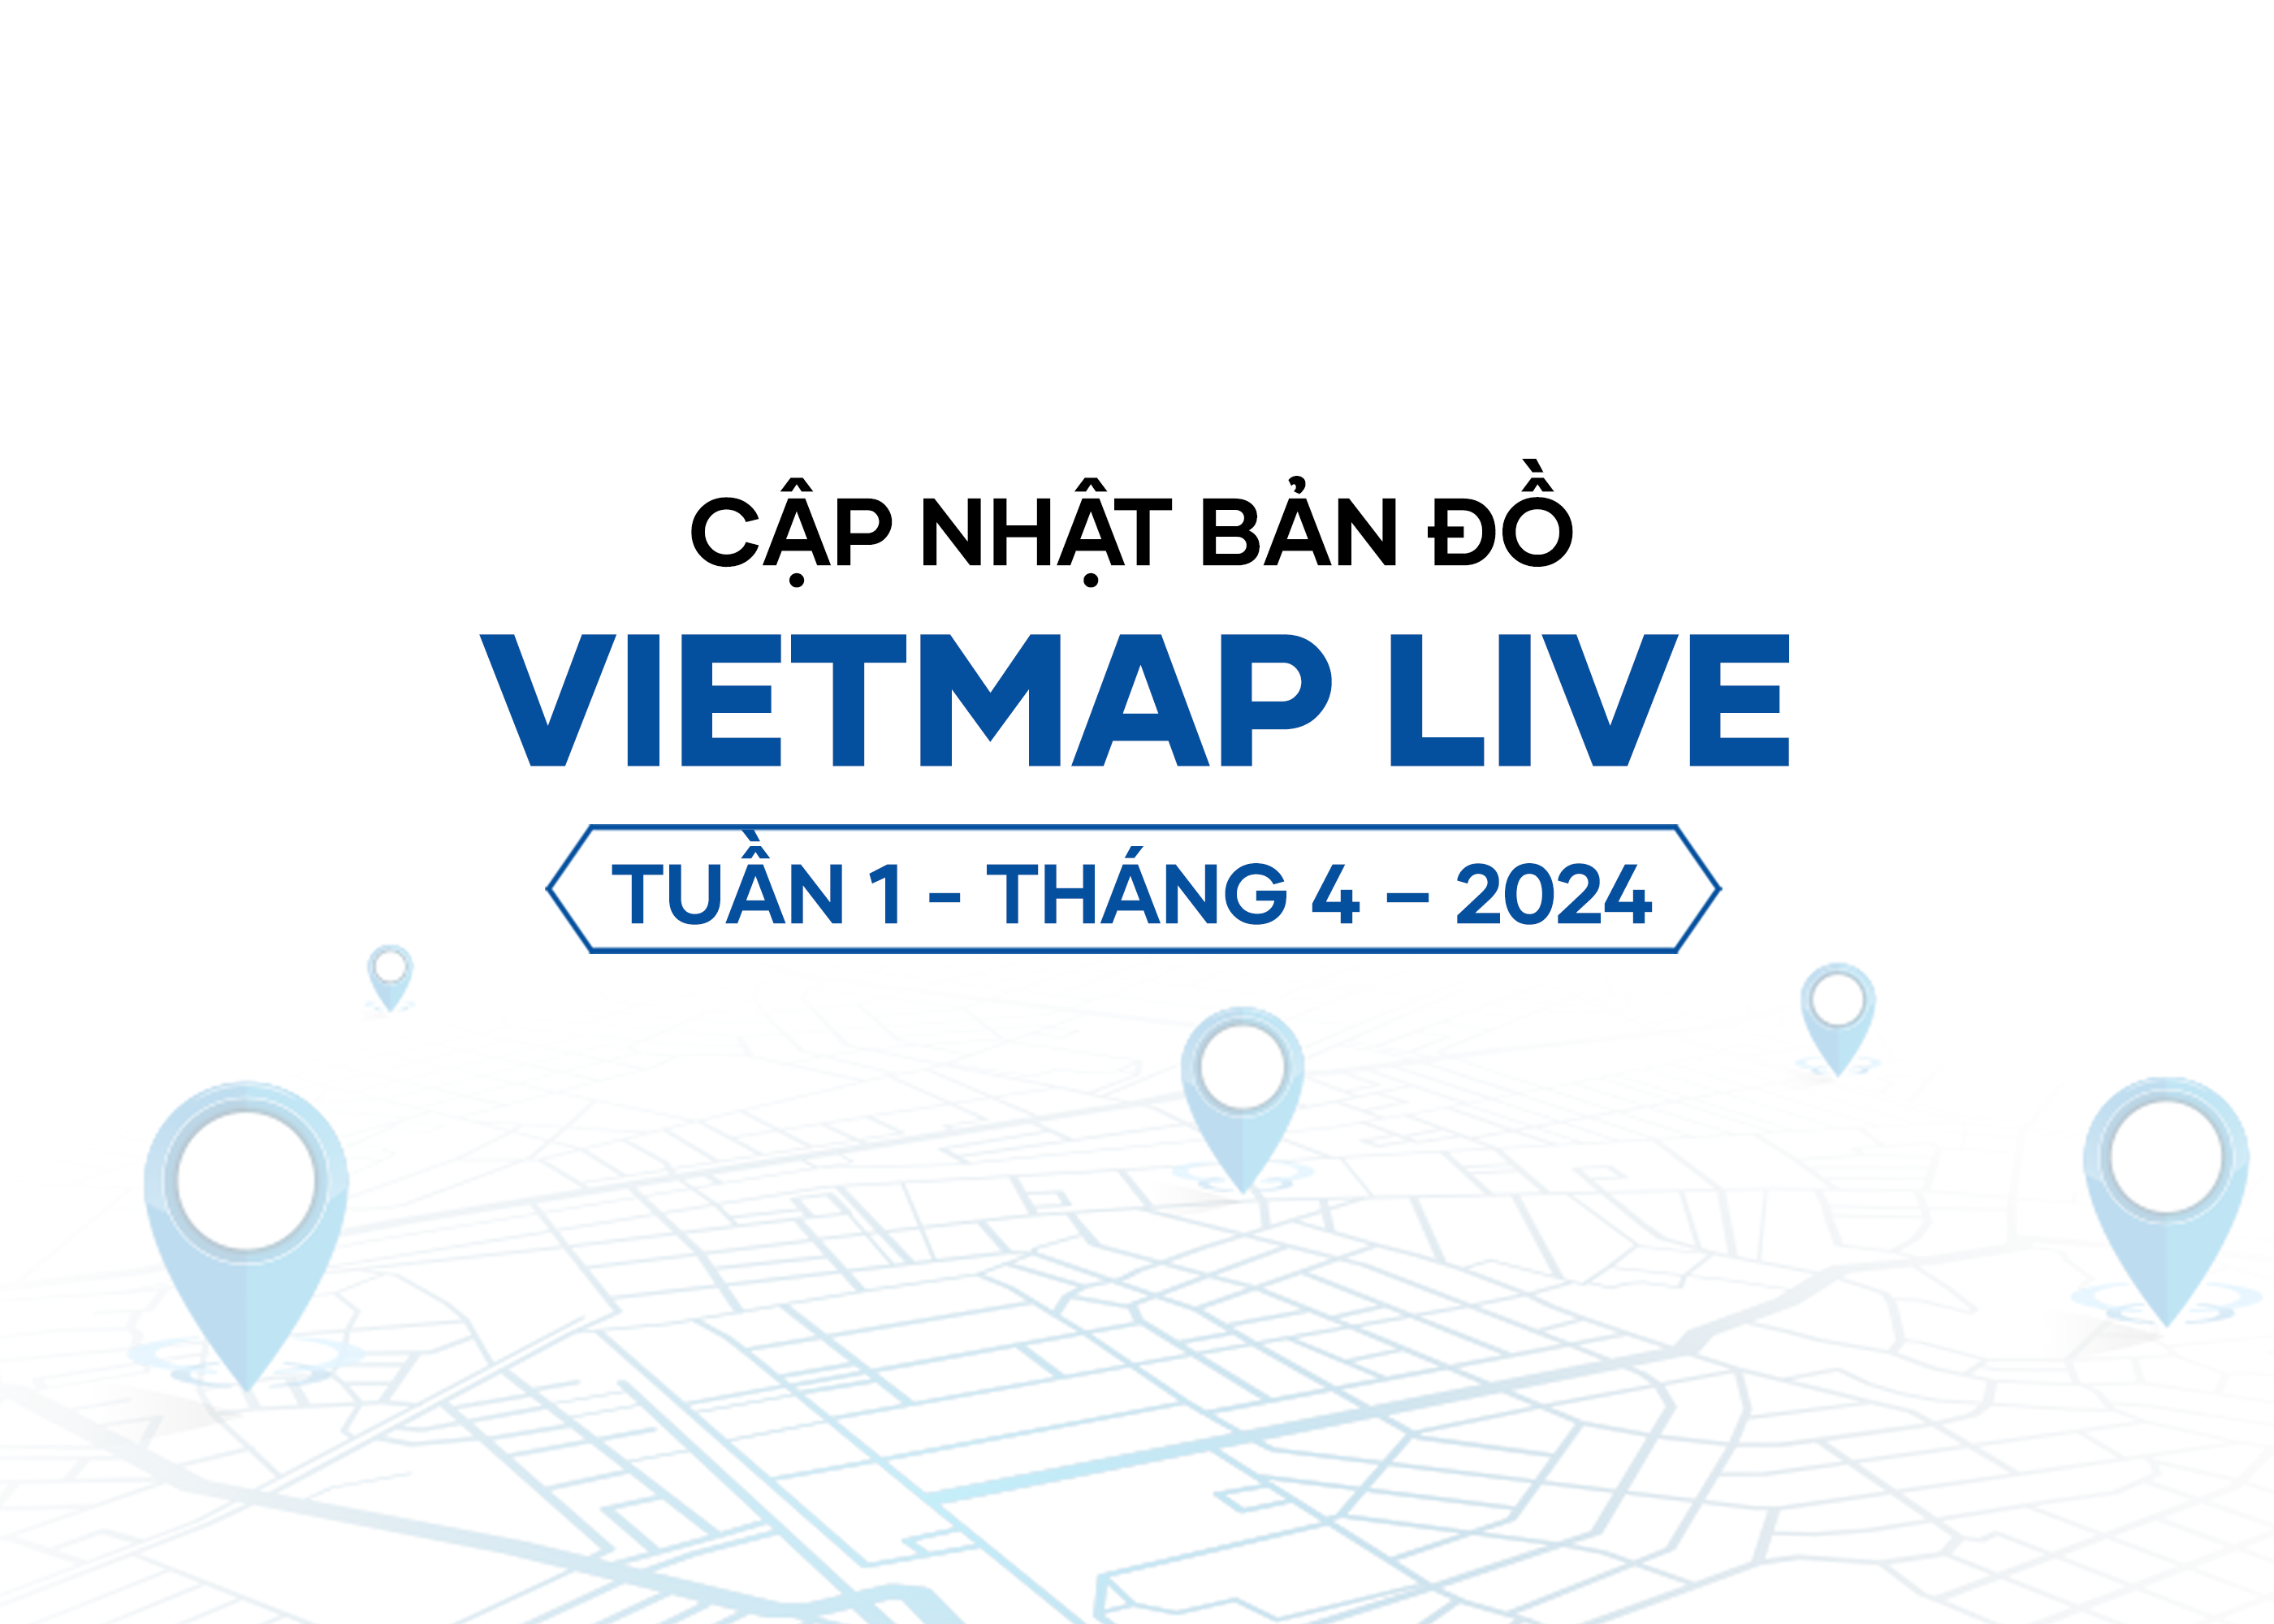 VIETMAP LIVE Cập Nhật Dữ Liệu Bản Đồ Tuần 1 - Tháng 4/2024